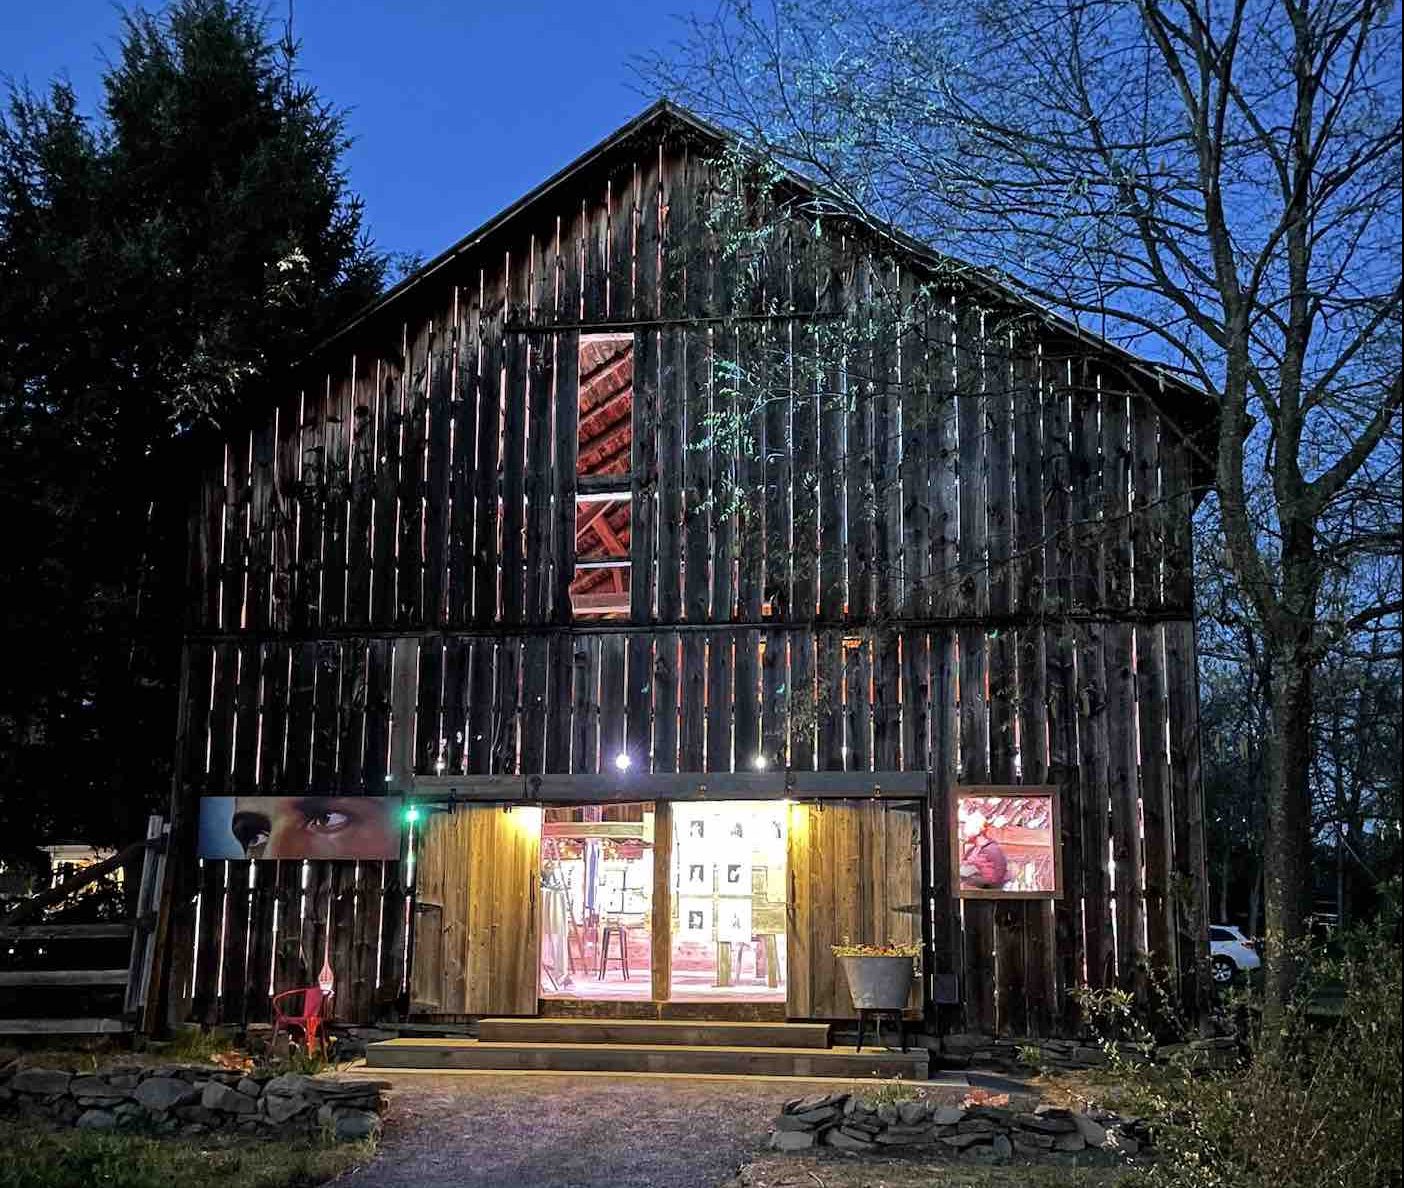 exterior of barn with open doors showing artwork displays